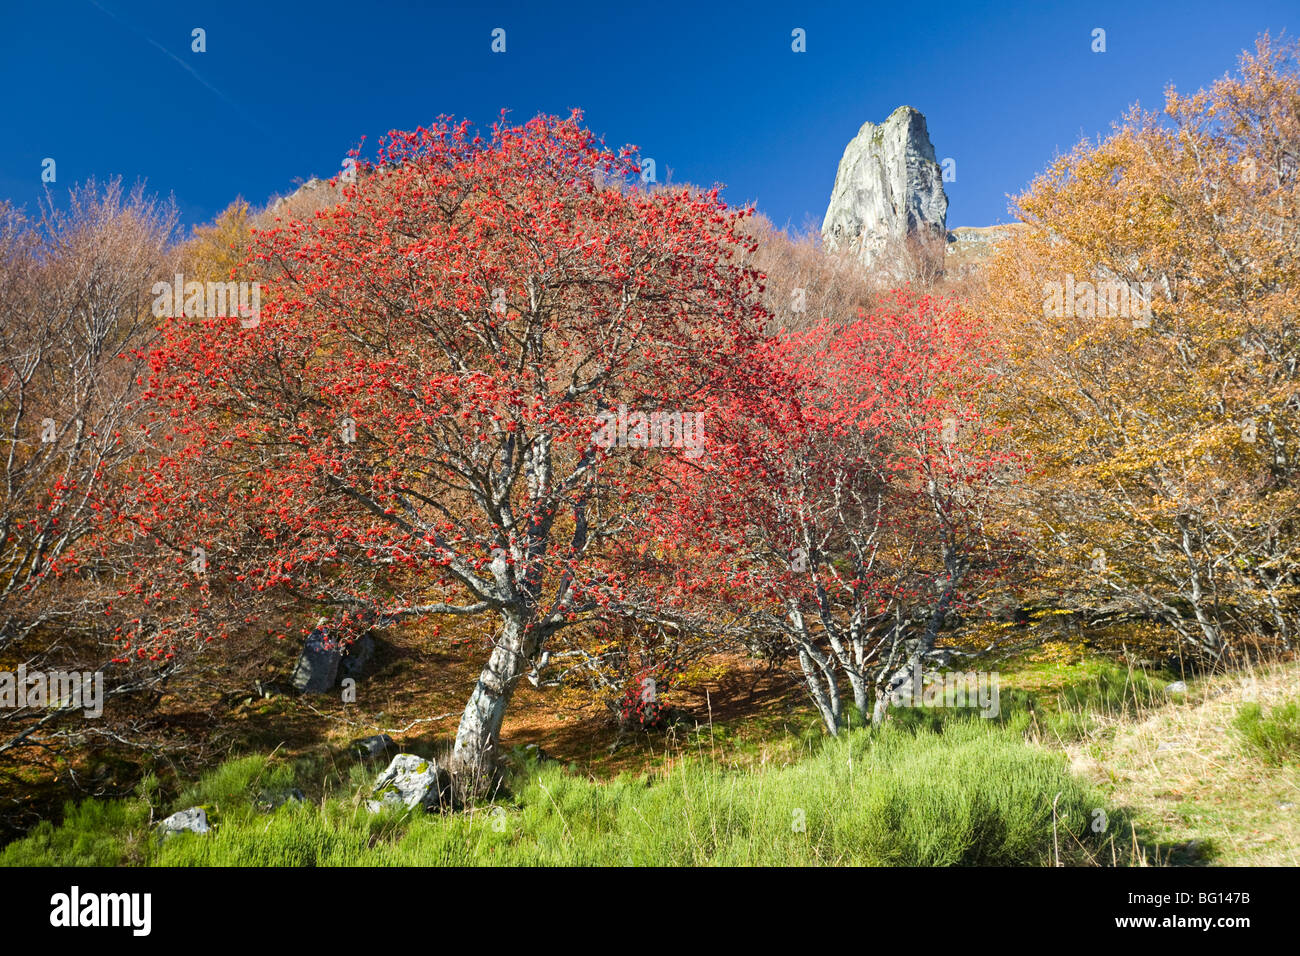 In Autumn, an European Rowan (Sorbus aucuparia) in the Chaudefour valley. Sorbier dans la vallée de Chaudefour, en automne. Stock Photo